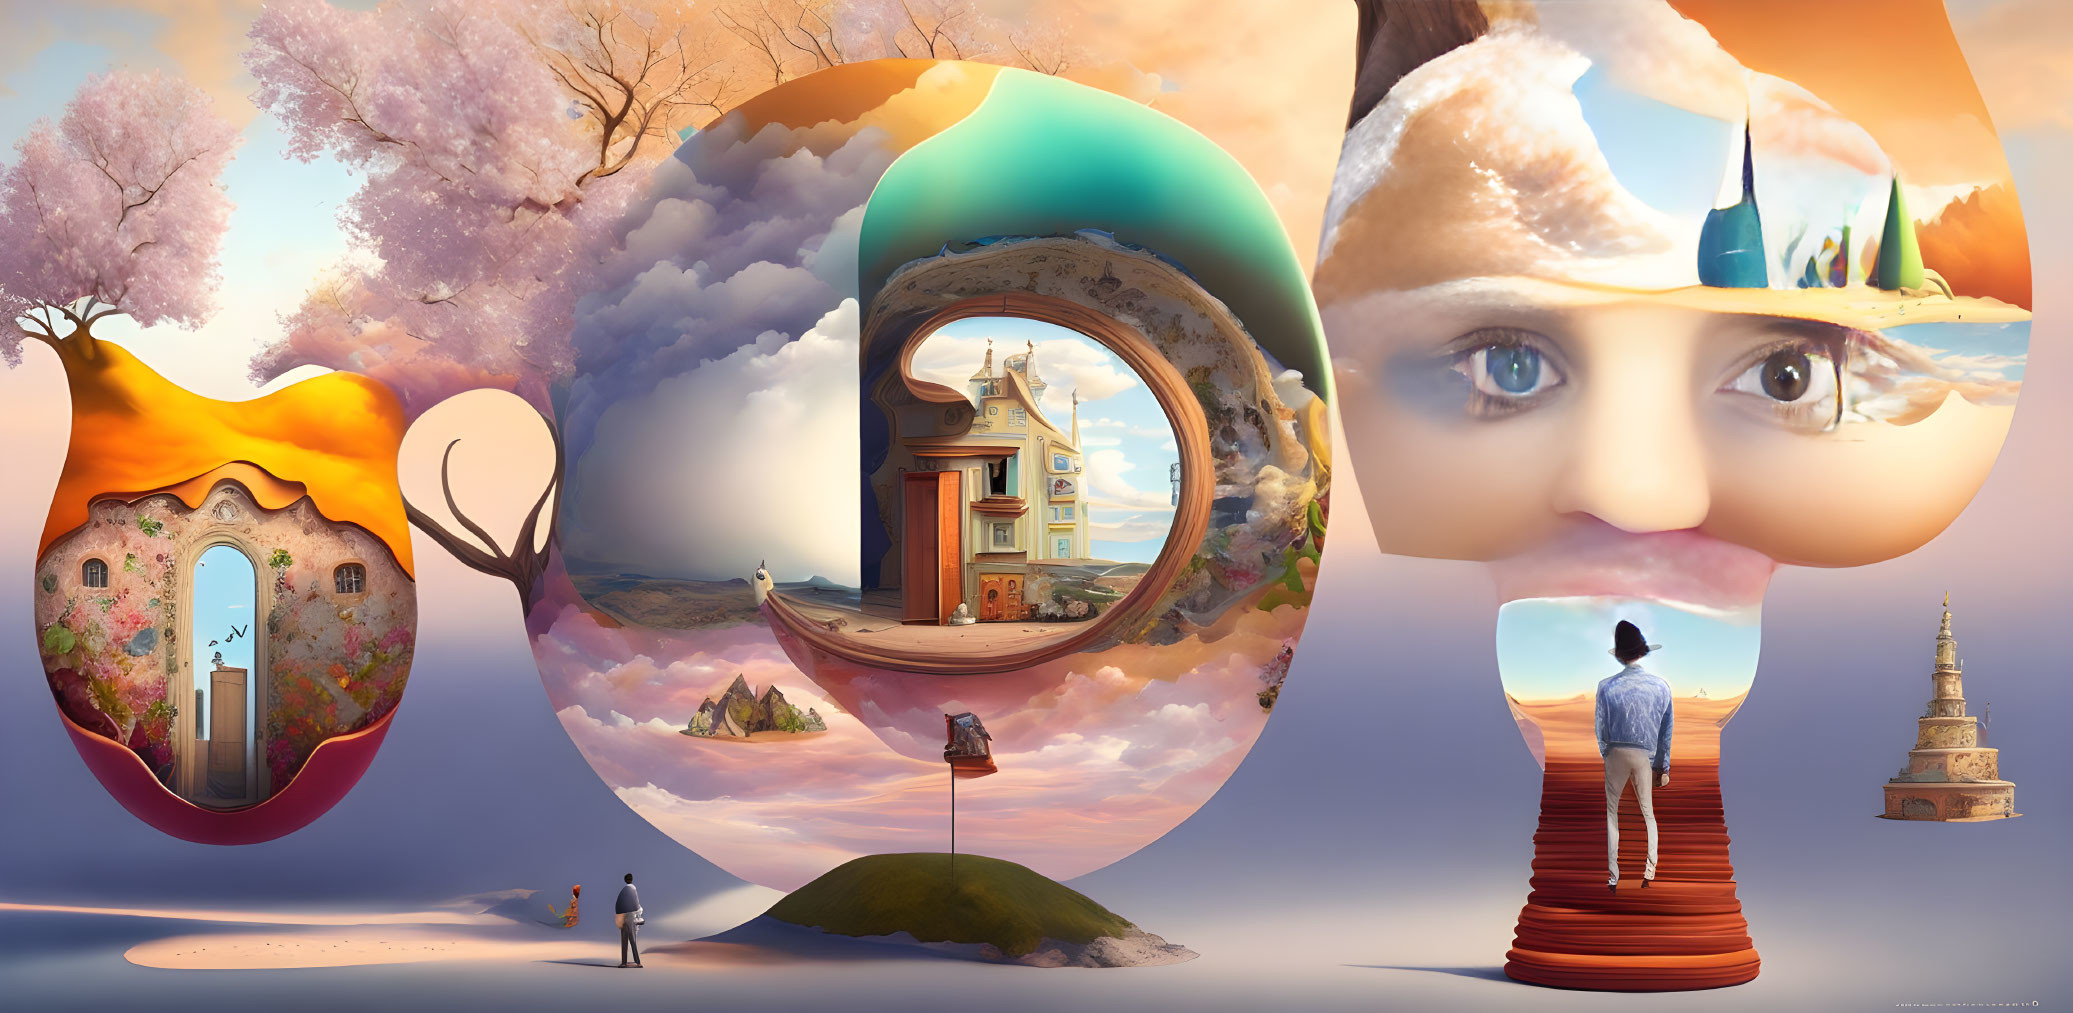 Surreal panoramic image of circular portals showcasing whimsical scenes